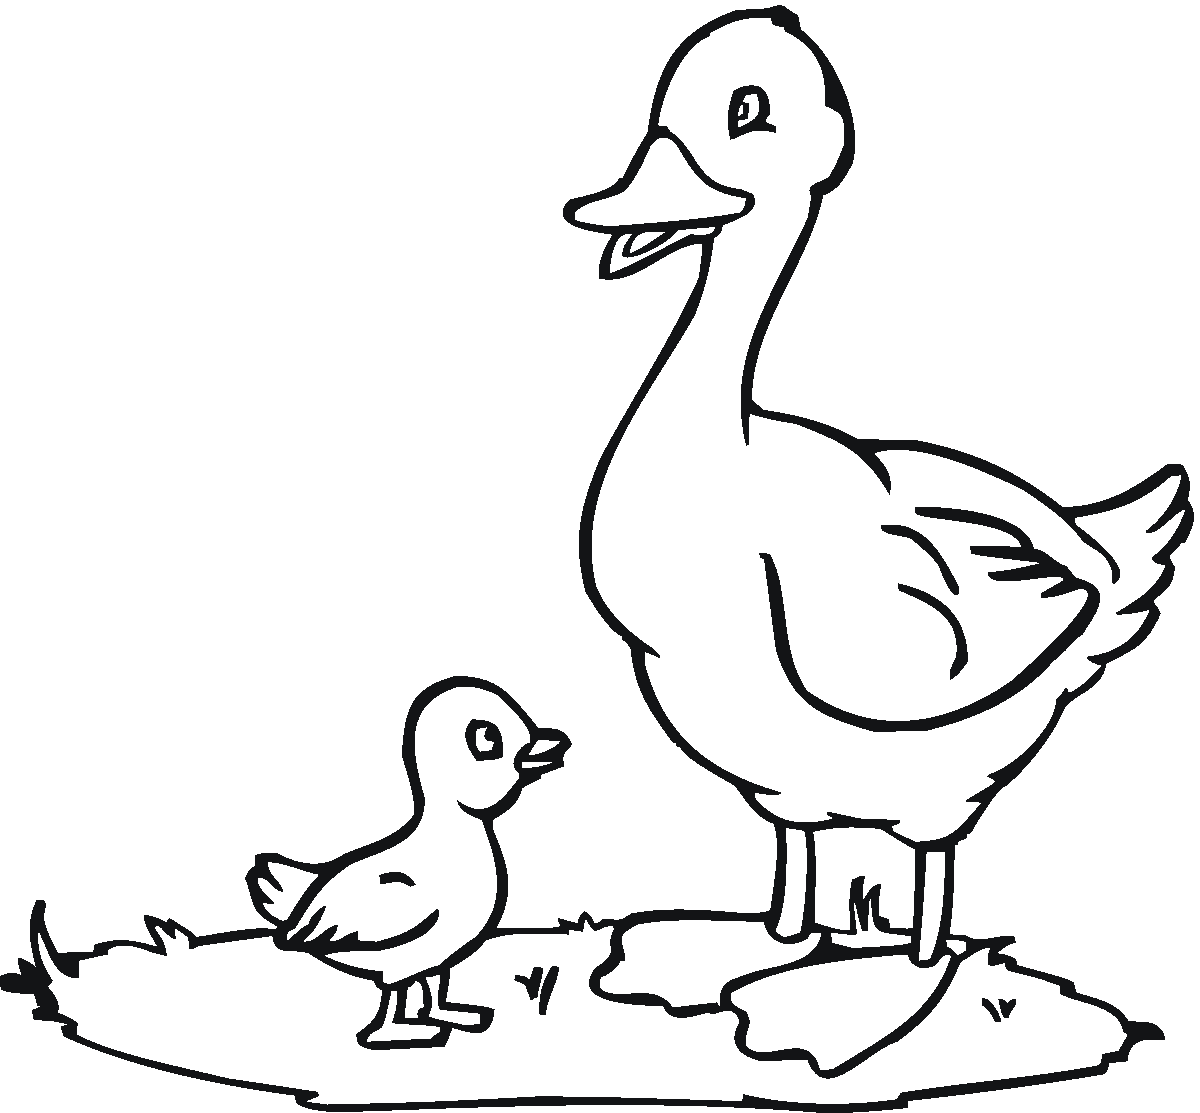 duck-template-preschool-clipart-best